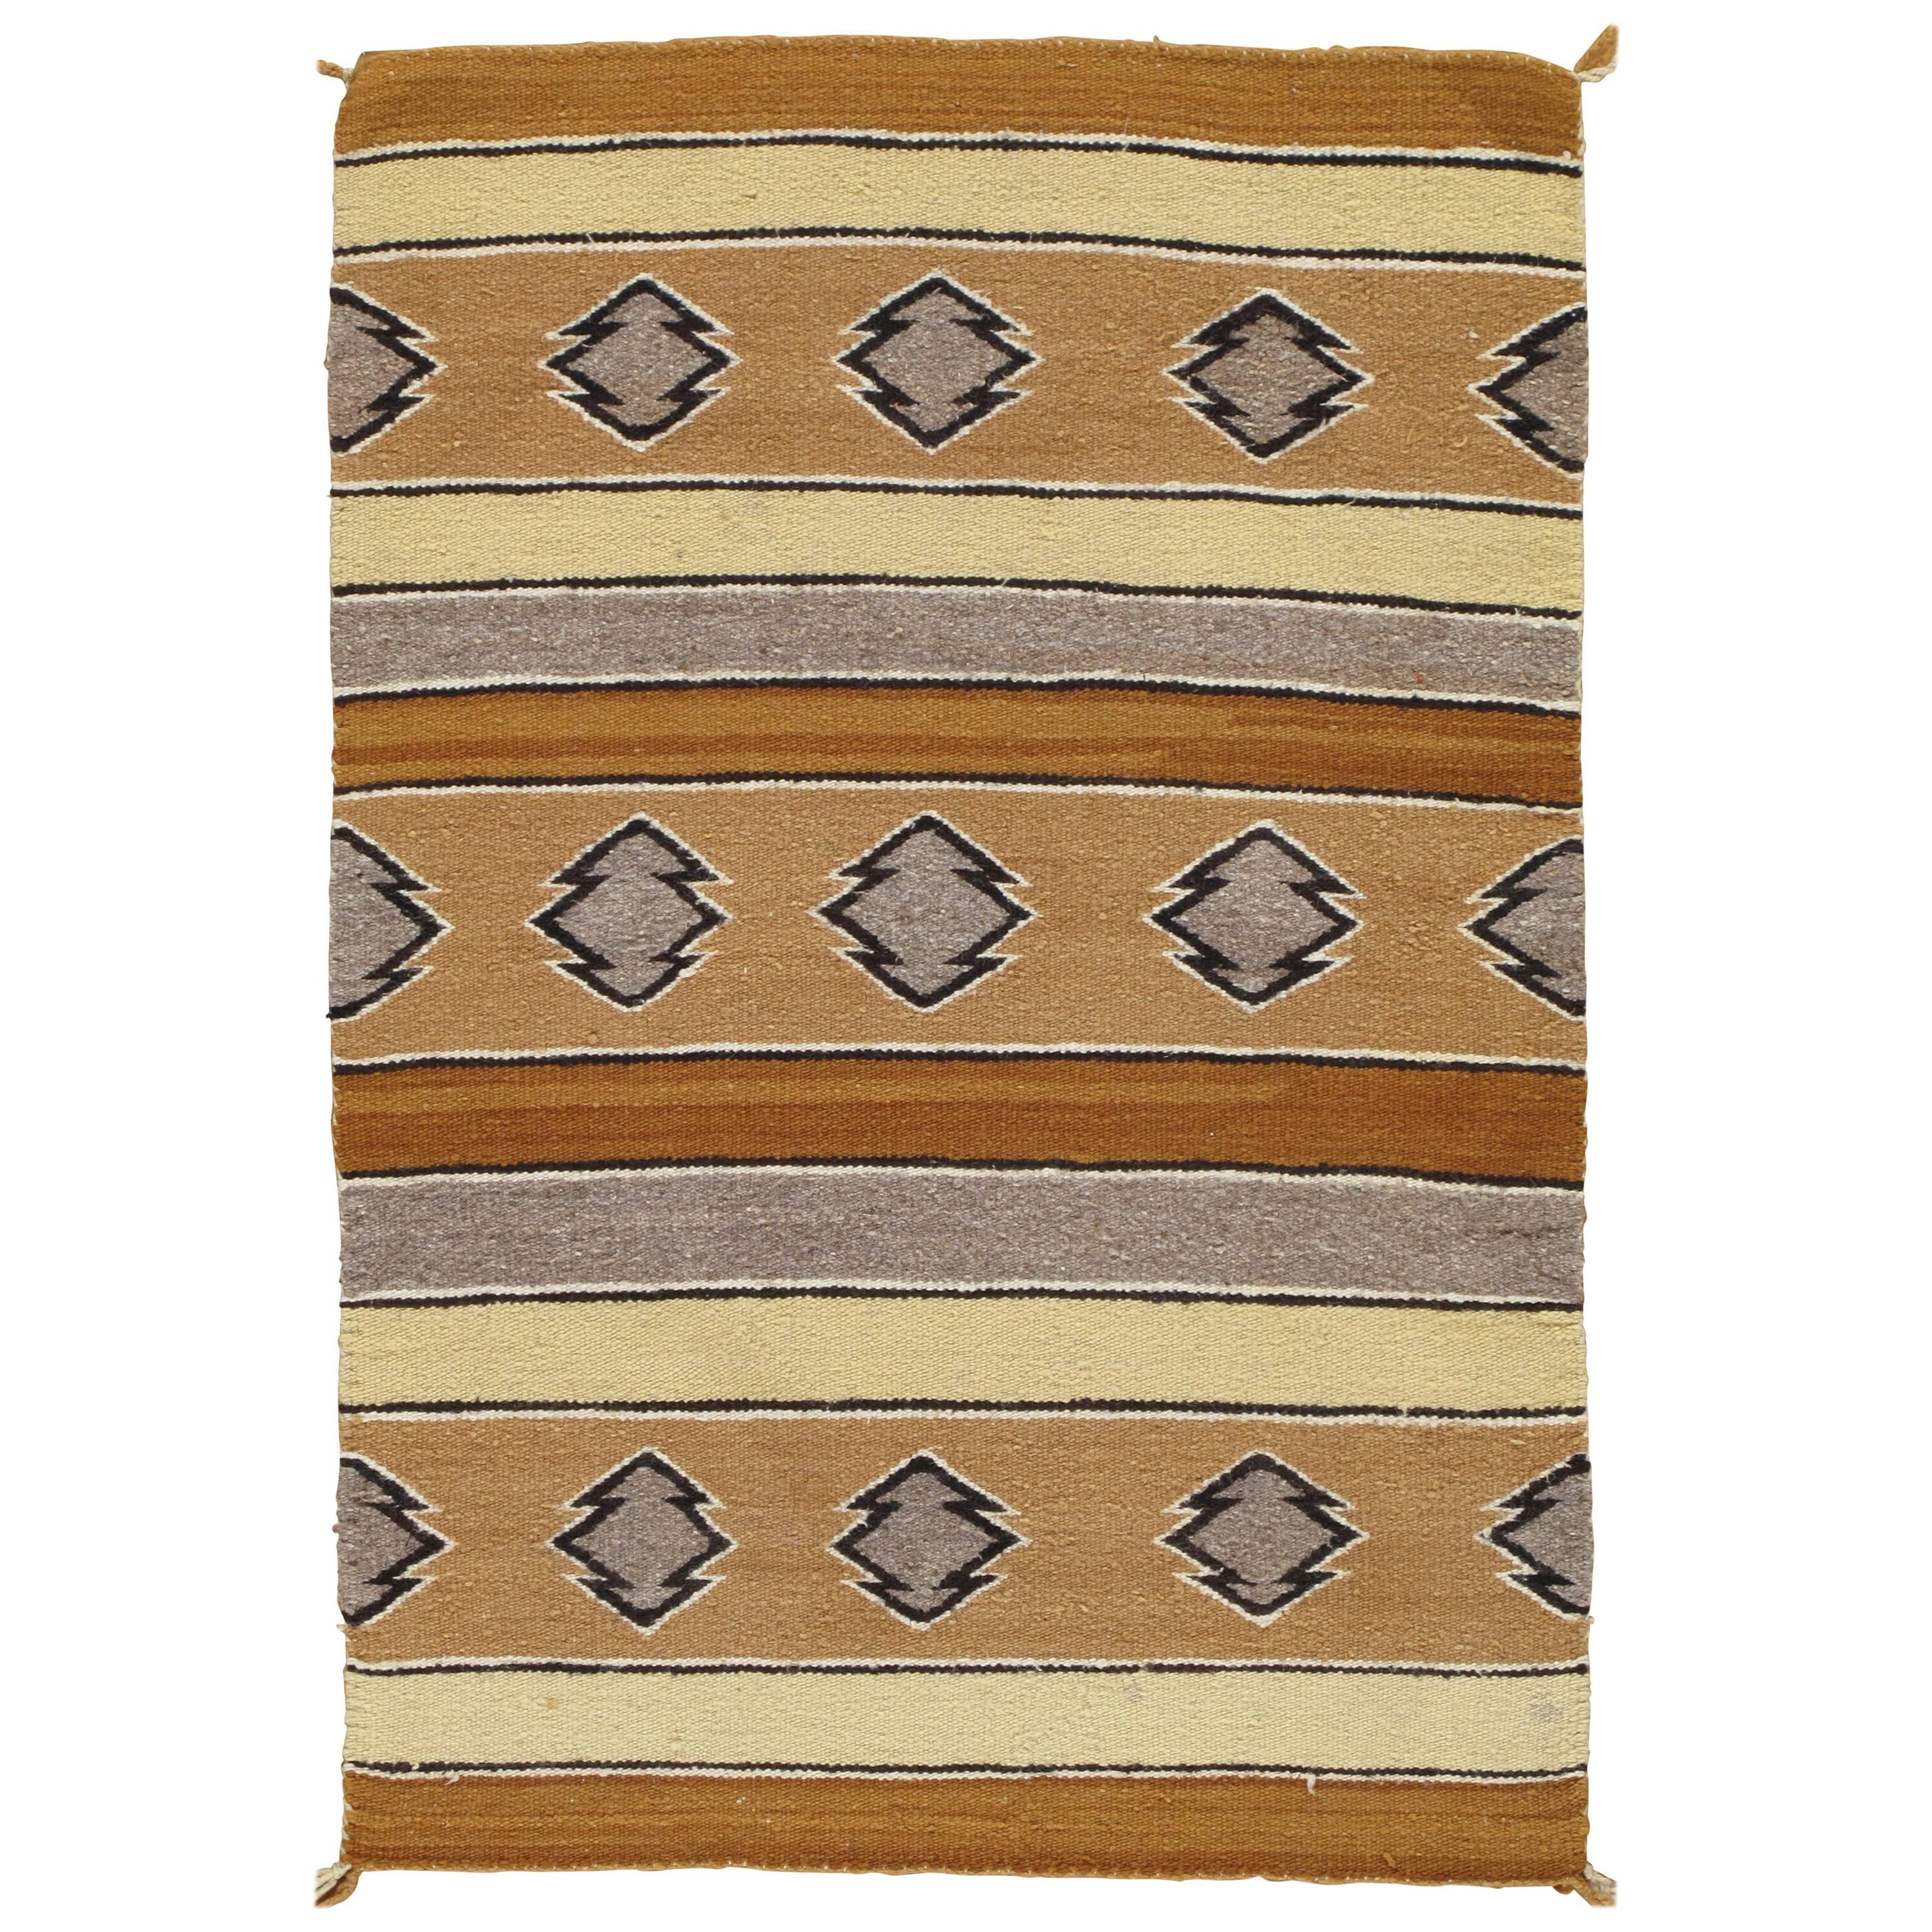 Tapis Navajo vintage, tapis artisanal, laine faite à la main, beige, caramel, brun clair